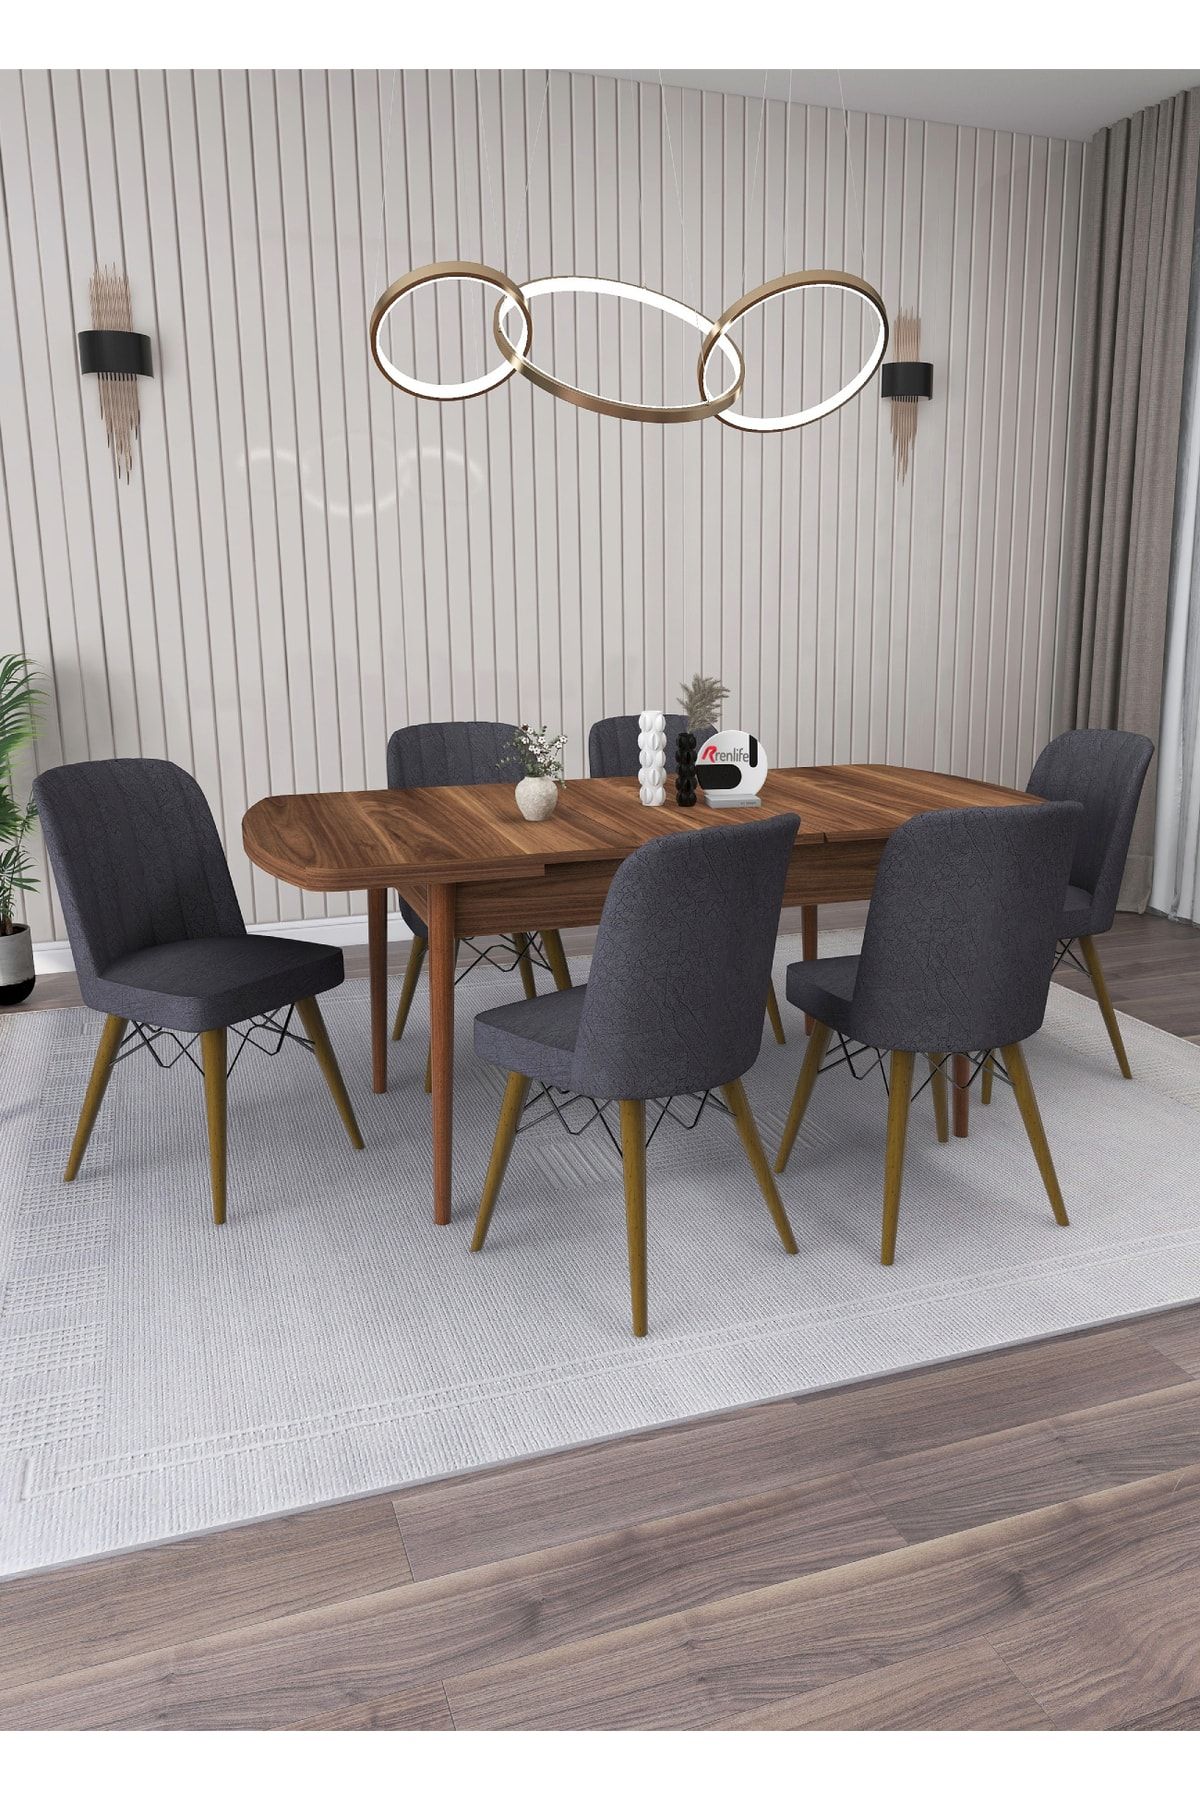 Renlife Yemek Masası Masa Sandalye Takımı Salon Masası Açılabilir 6 Kişilik (KEMENÇE-KOYU GRİ SANDALYE )